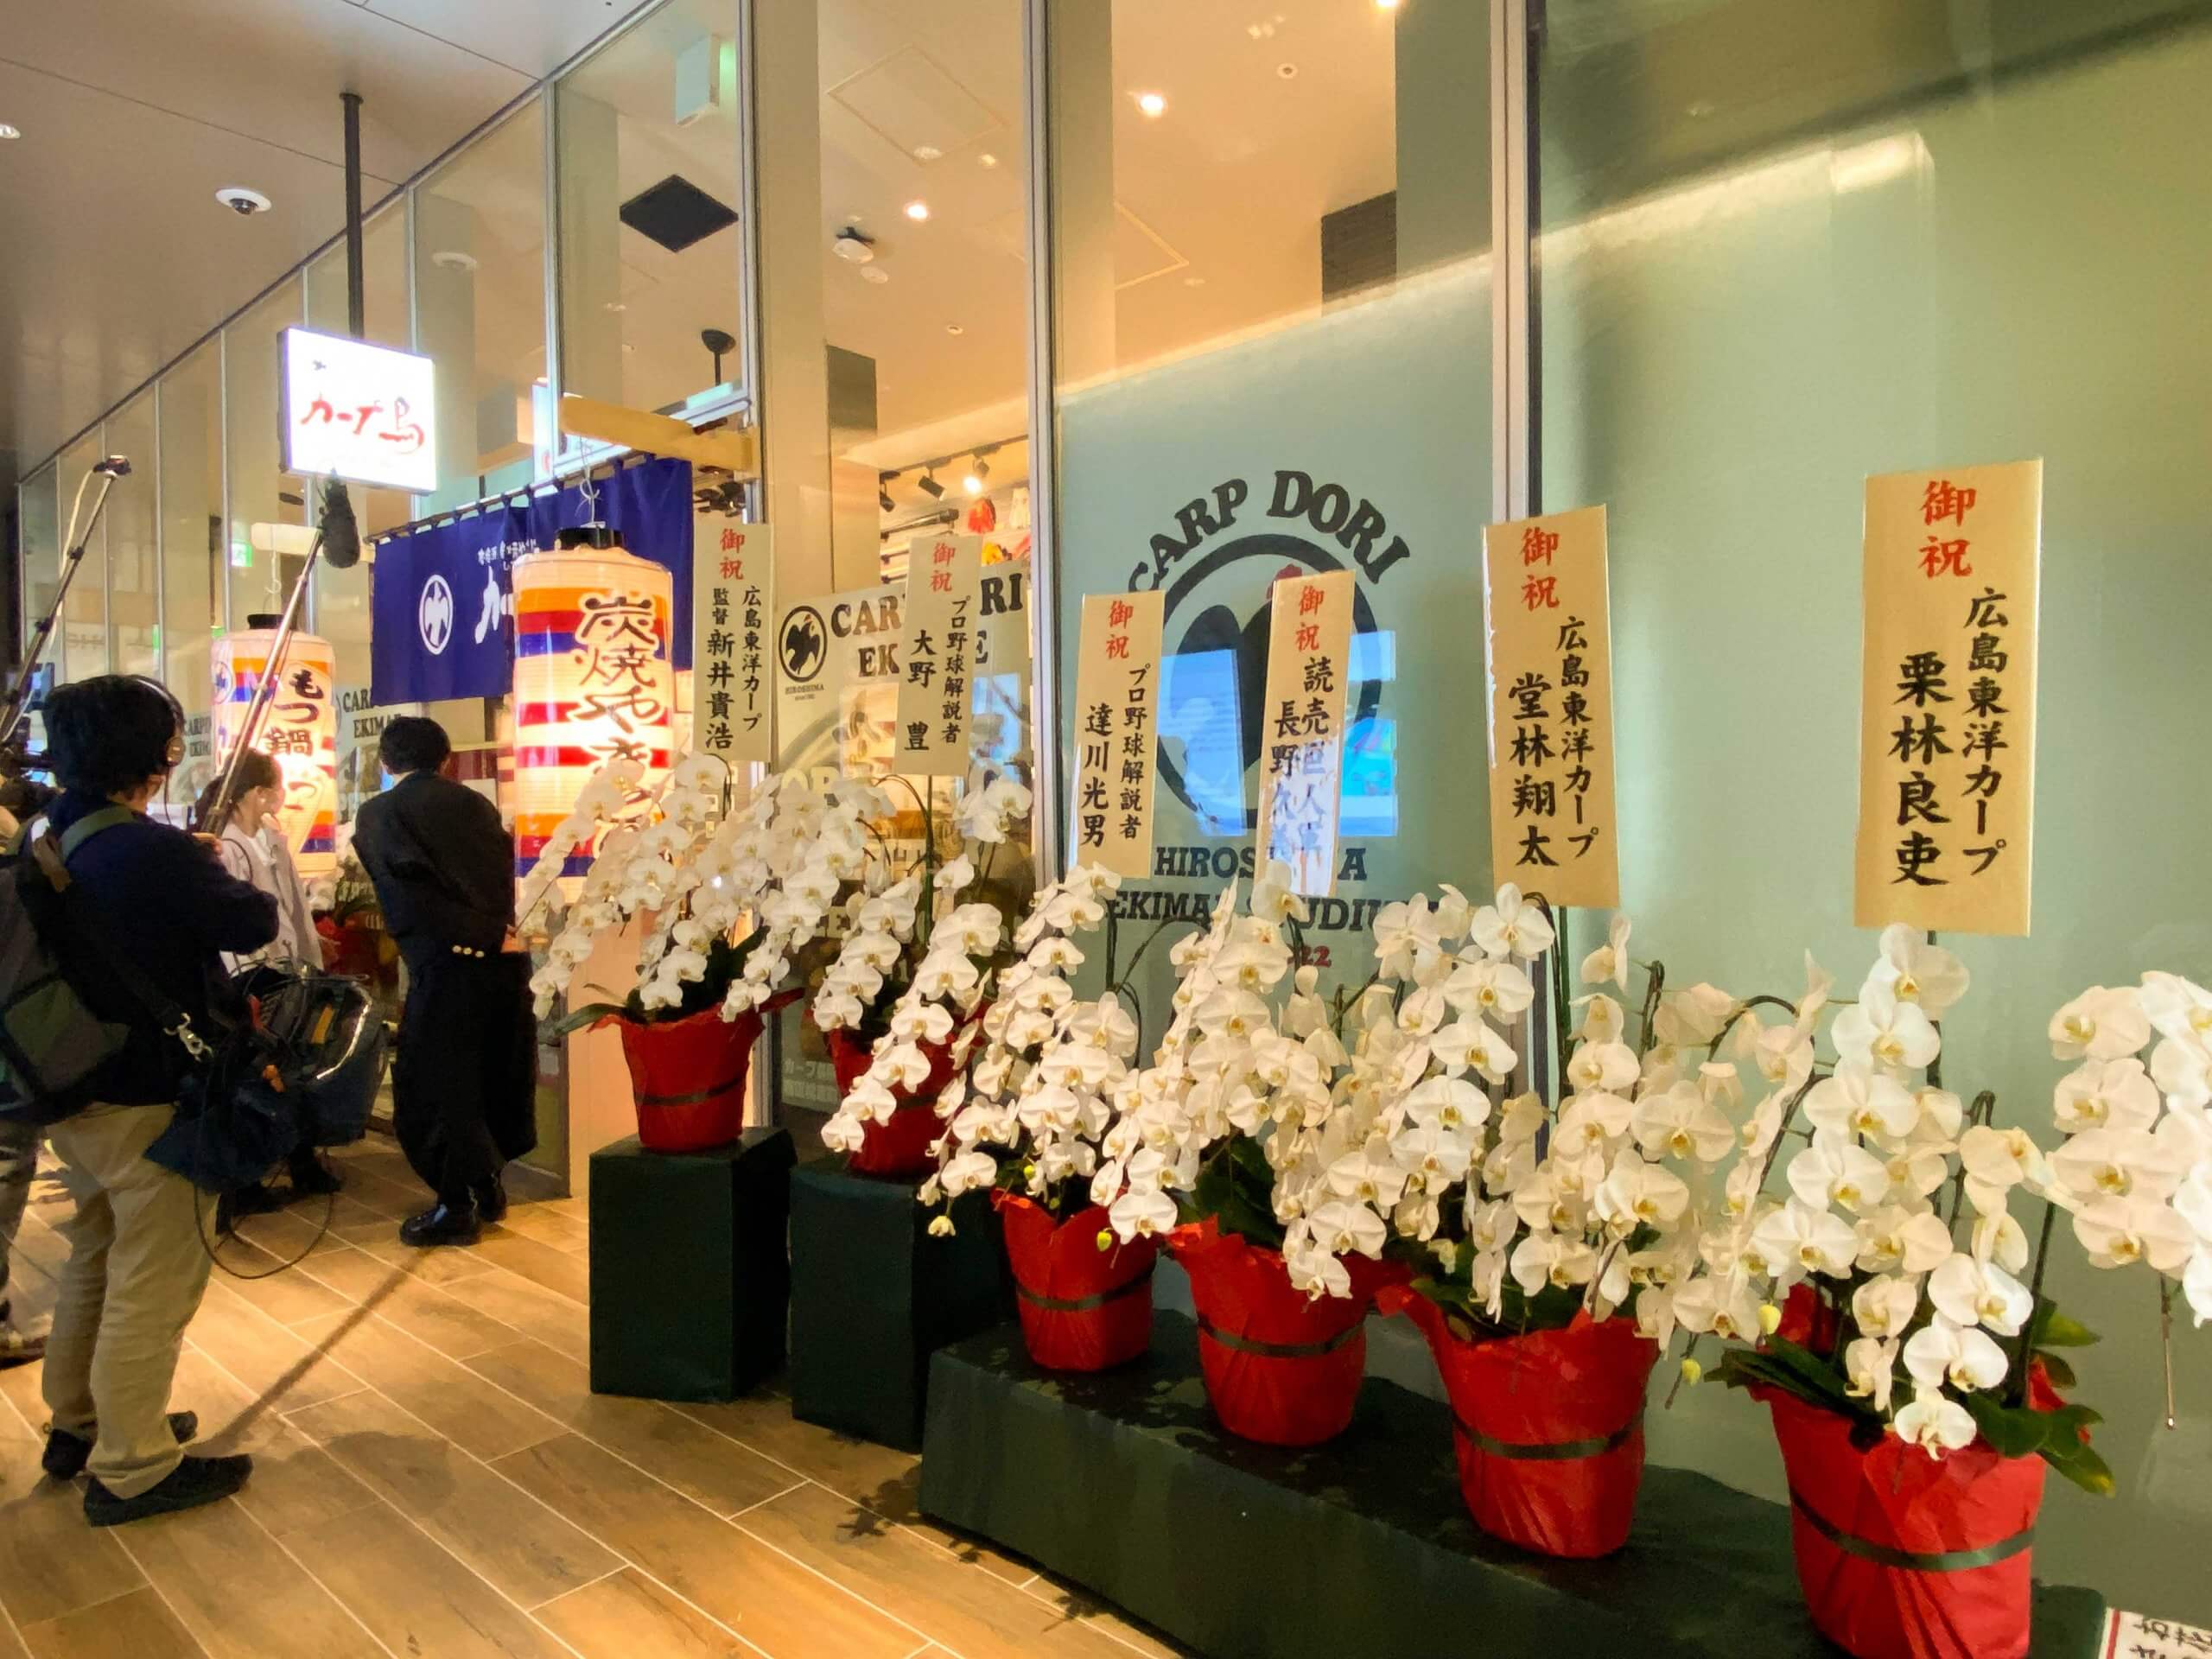 言わずと知れた有名店「カープ鳥」が広島JPビルディング内にオープン